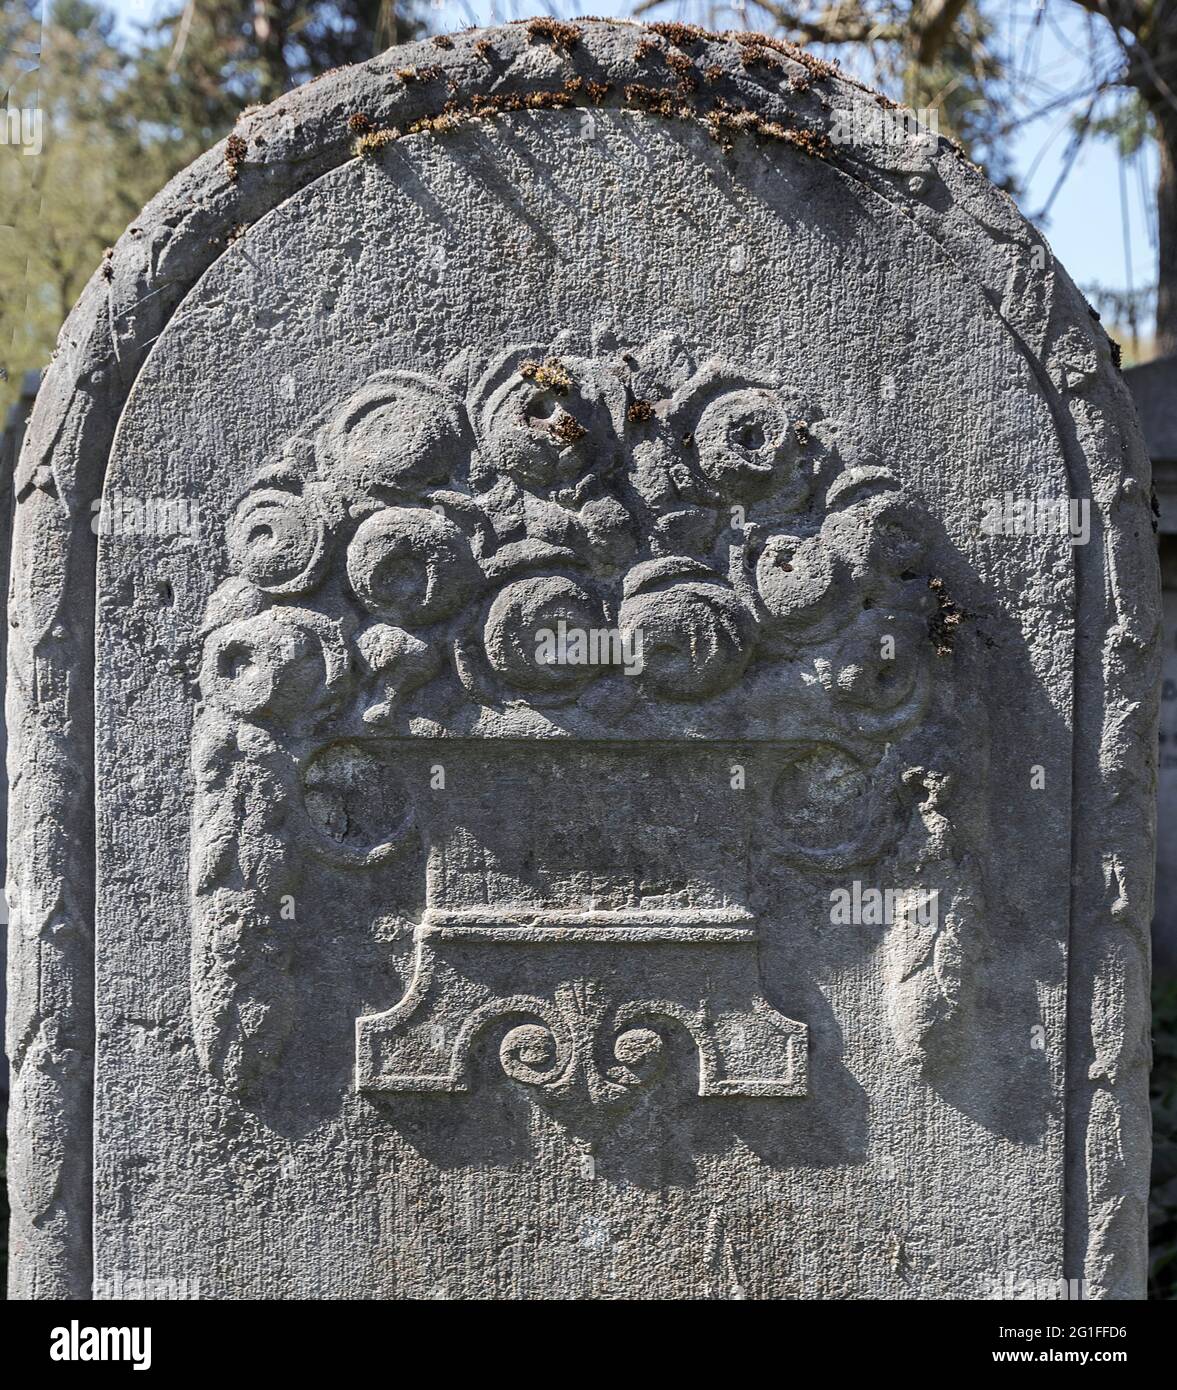 Rosenrelief auf einem jüdischen Grabstein, Symbol der ewigen Liebe, Neuer jüdischer Friedhof, Nürnberg, Mittelfranken, Bayern, Deutschland Stockfoto